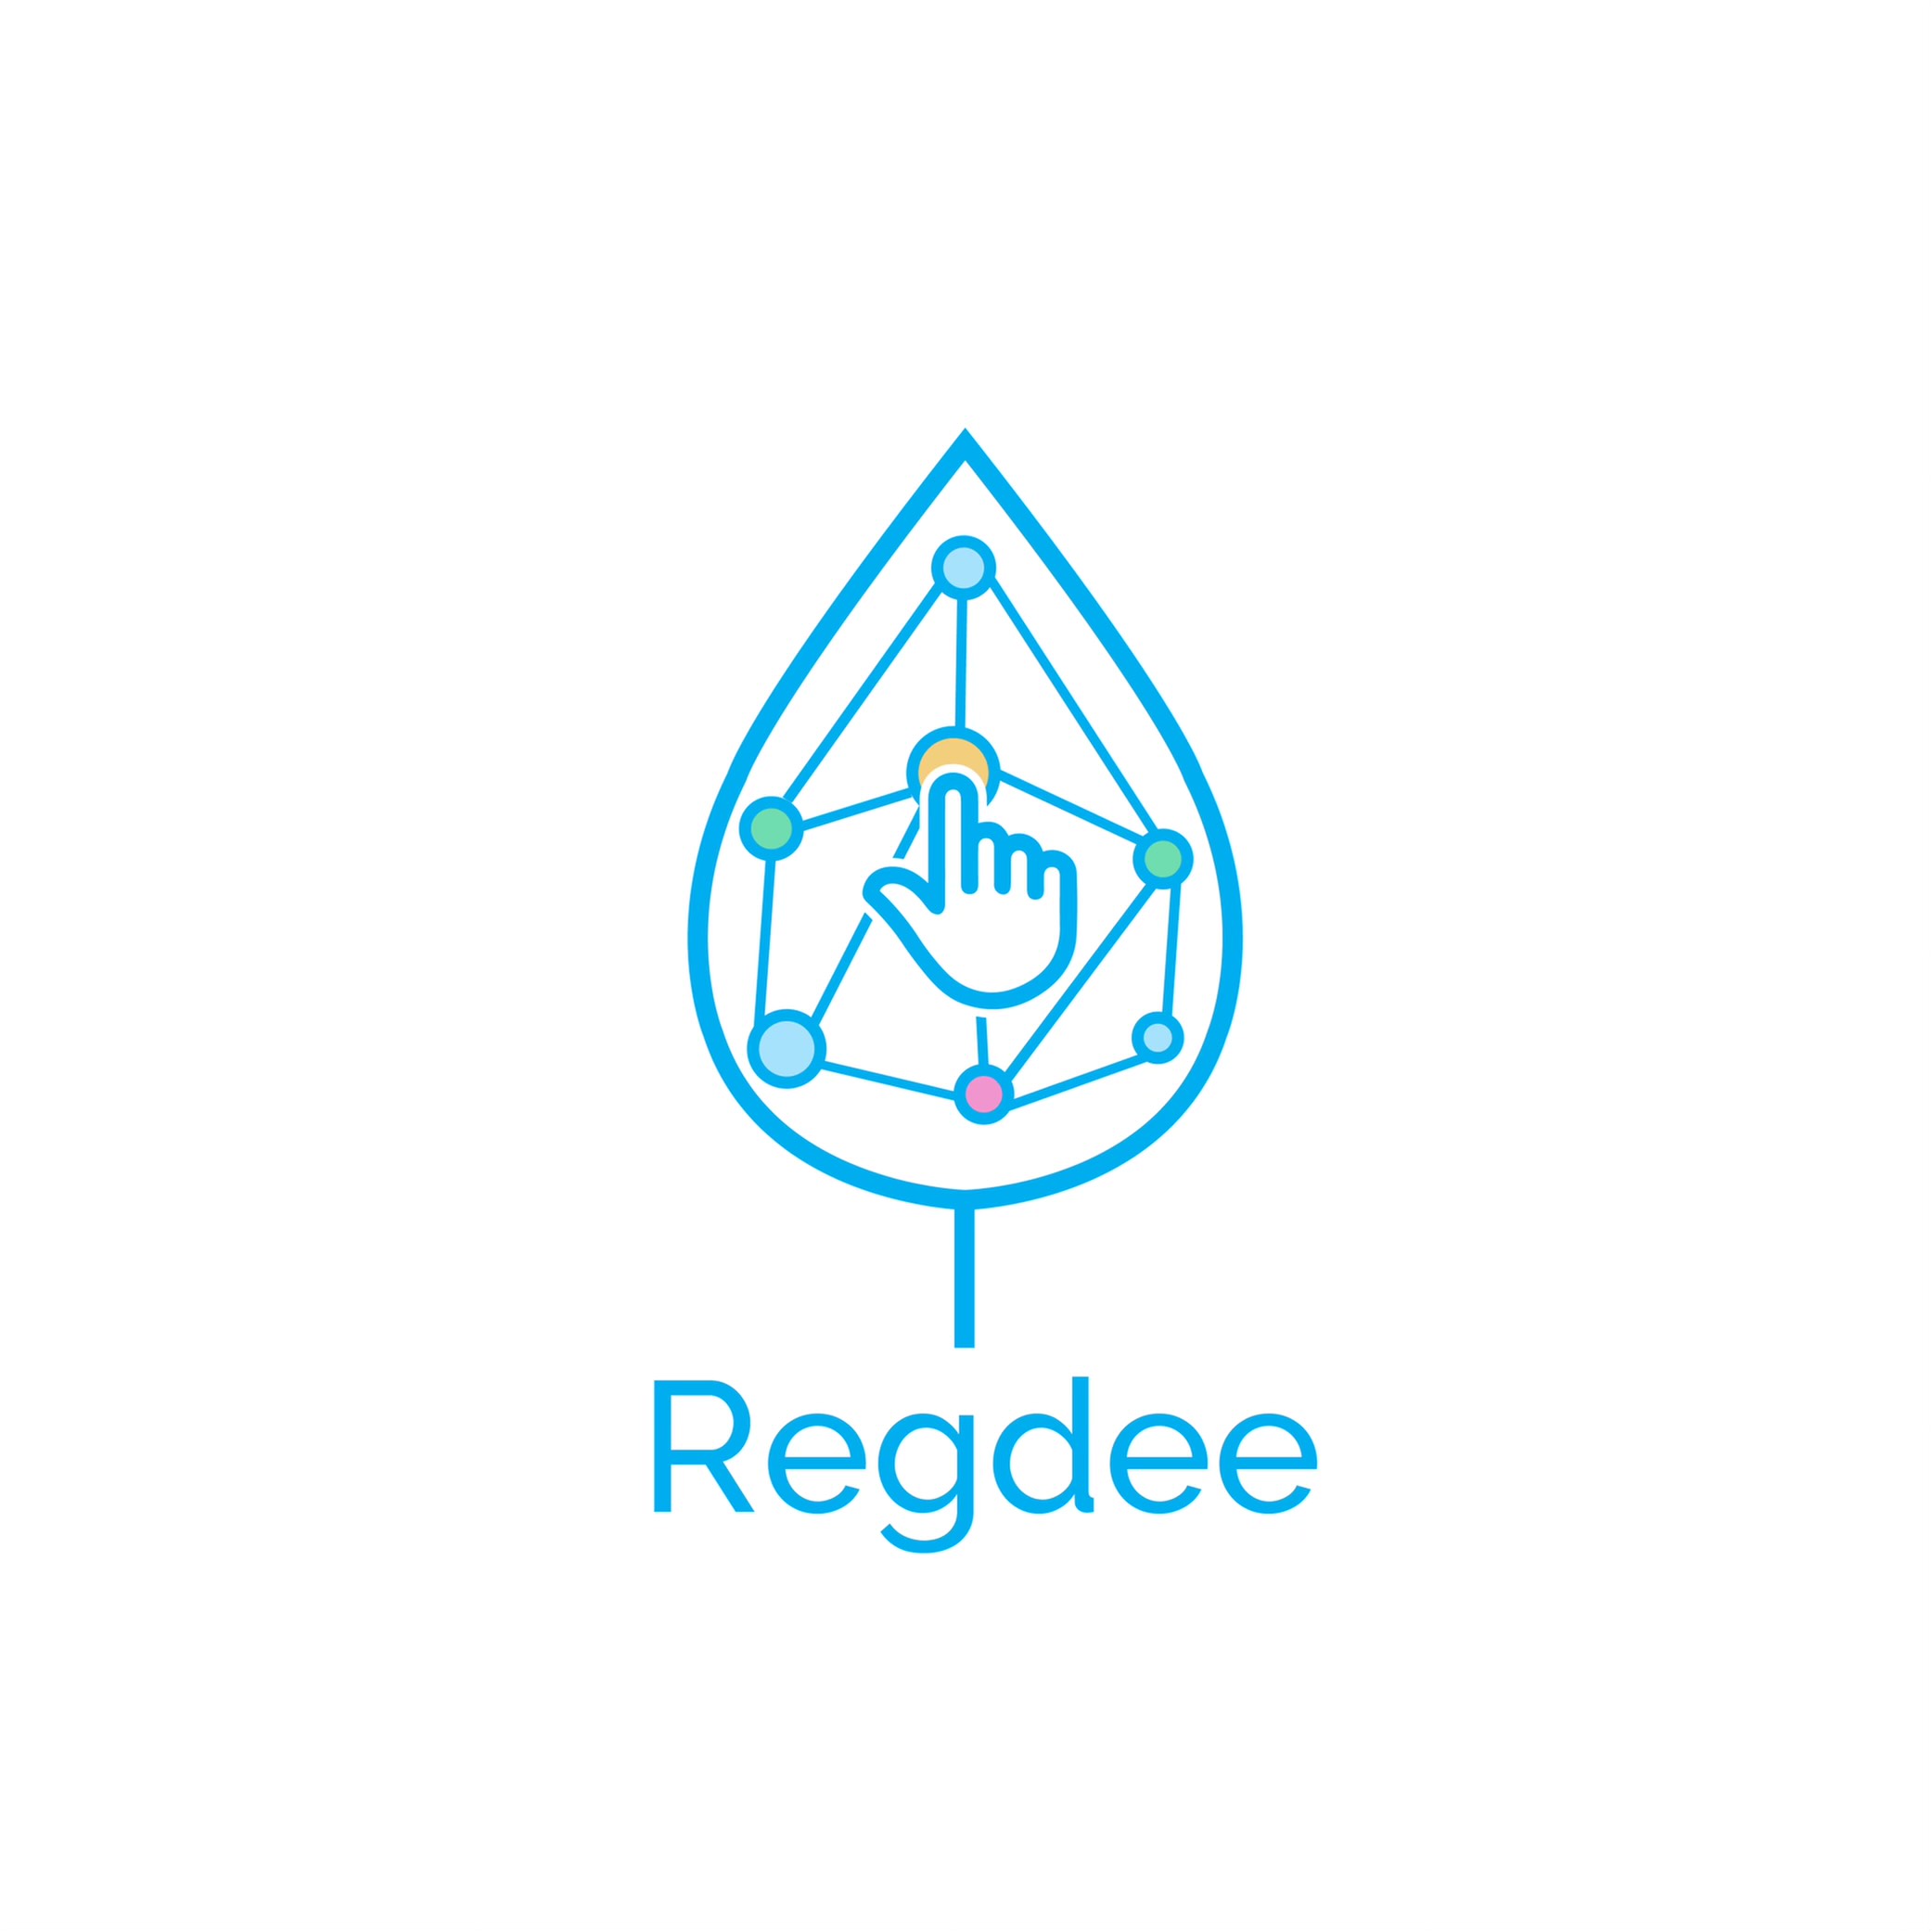 The Regdee.com logo